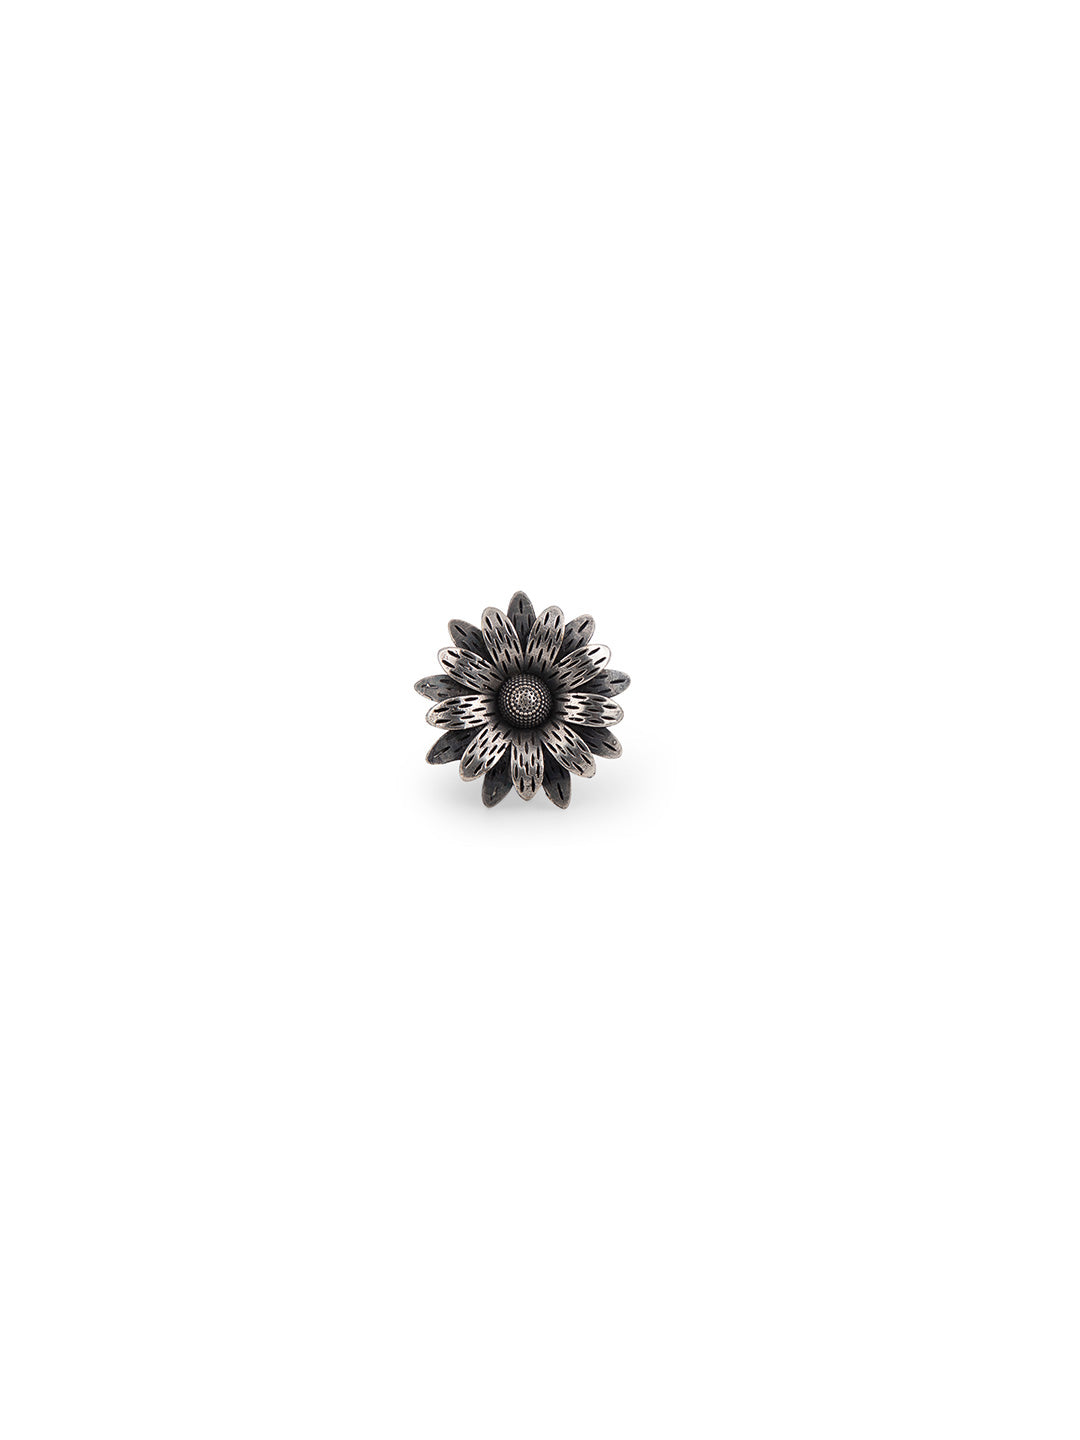 Priyaasi Oxidised Floral Statement Ring